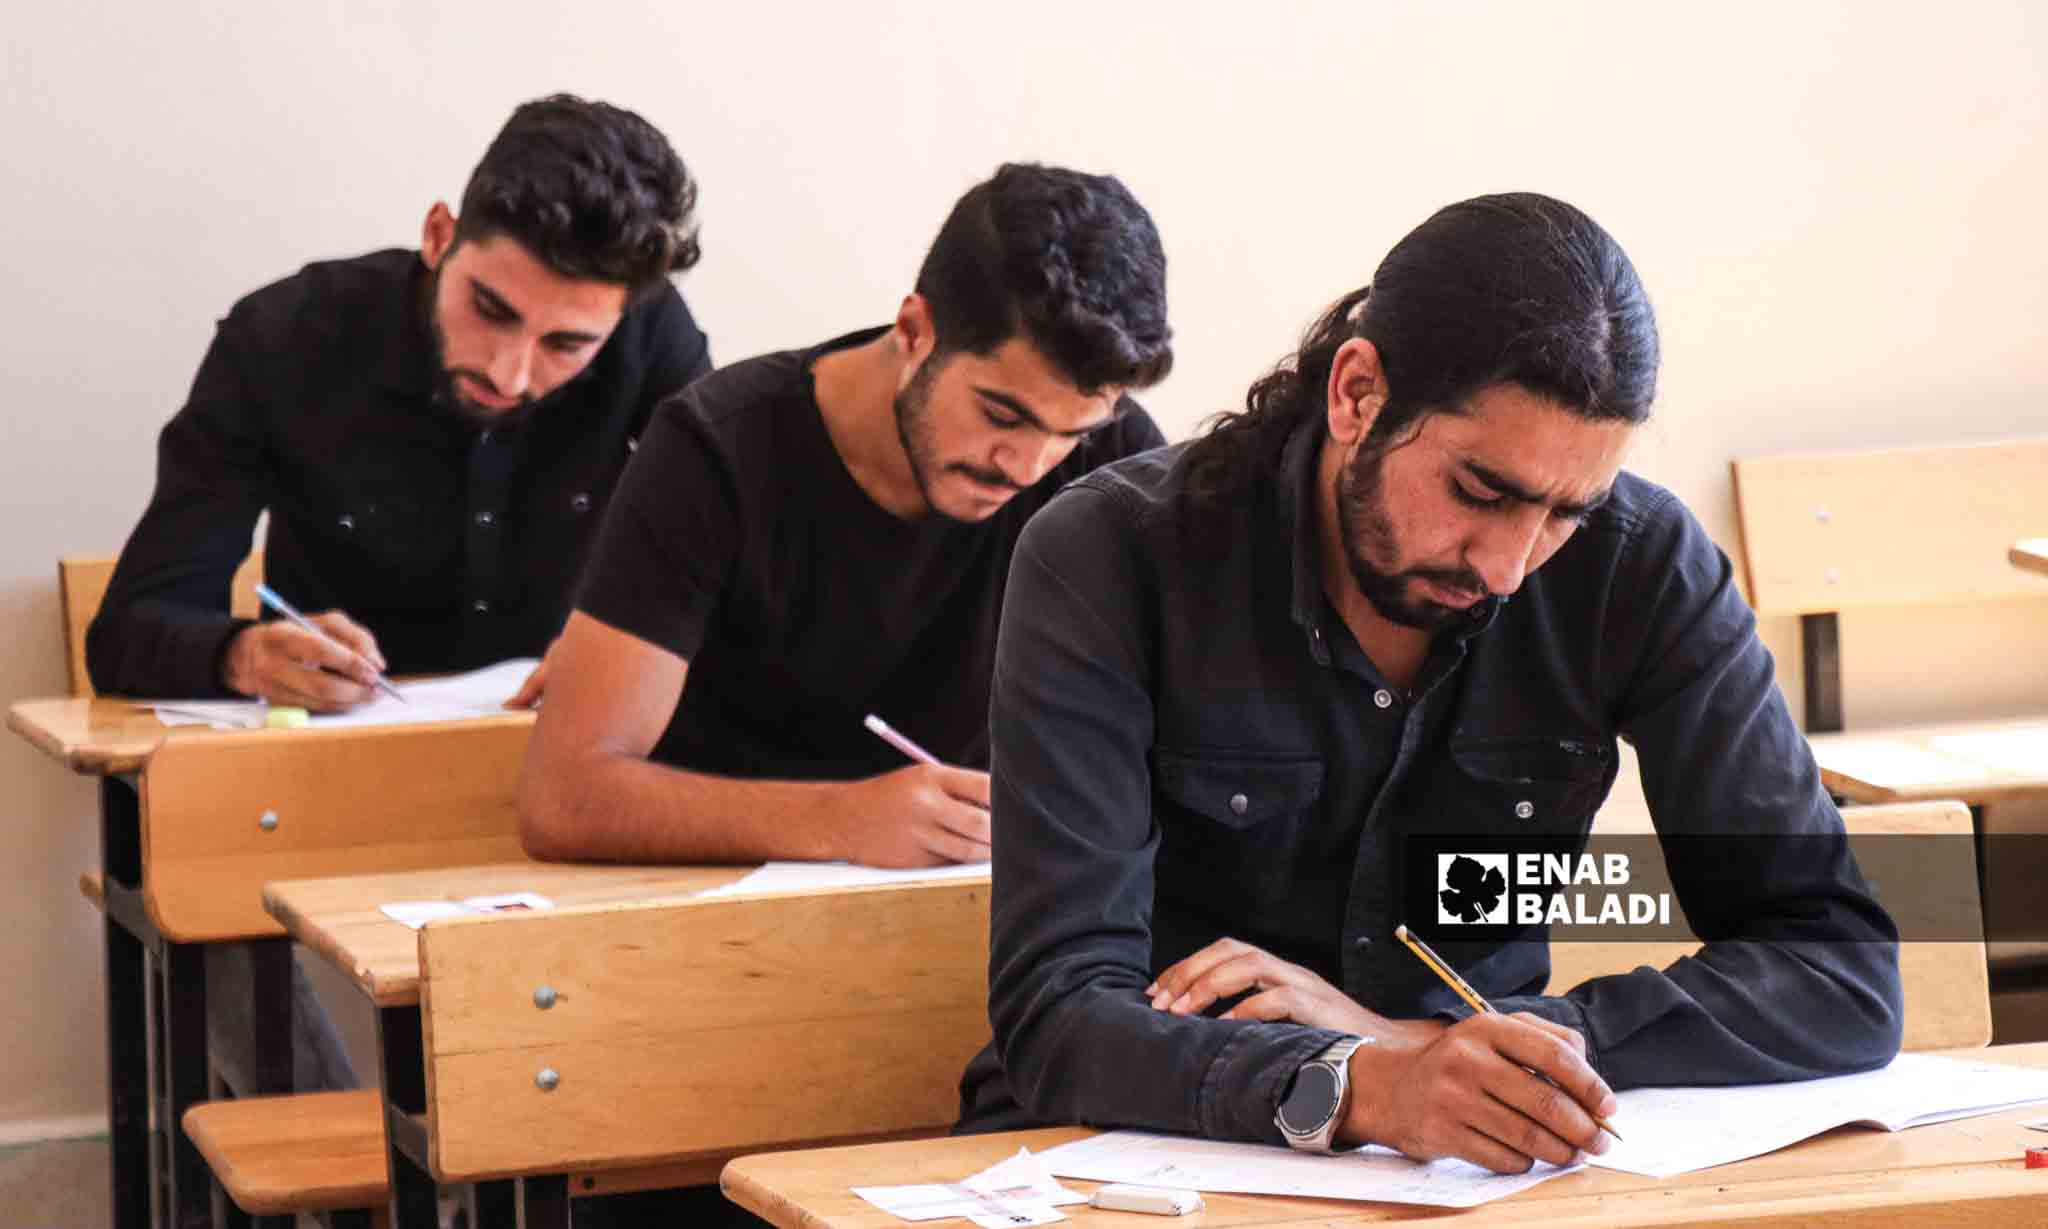 خلال امتحانات شهادات الثانوية لعام 2023 في مدينة رأس العين - 5 من تموز 2023 (/ حسين شعبو)